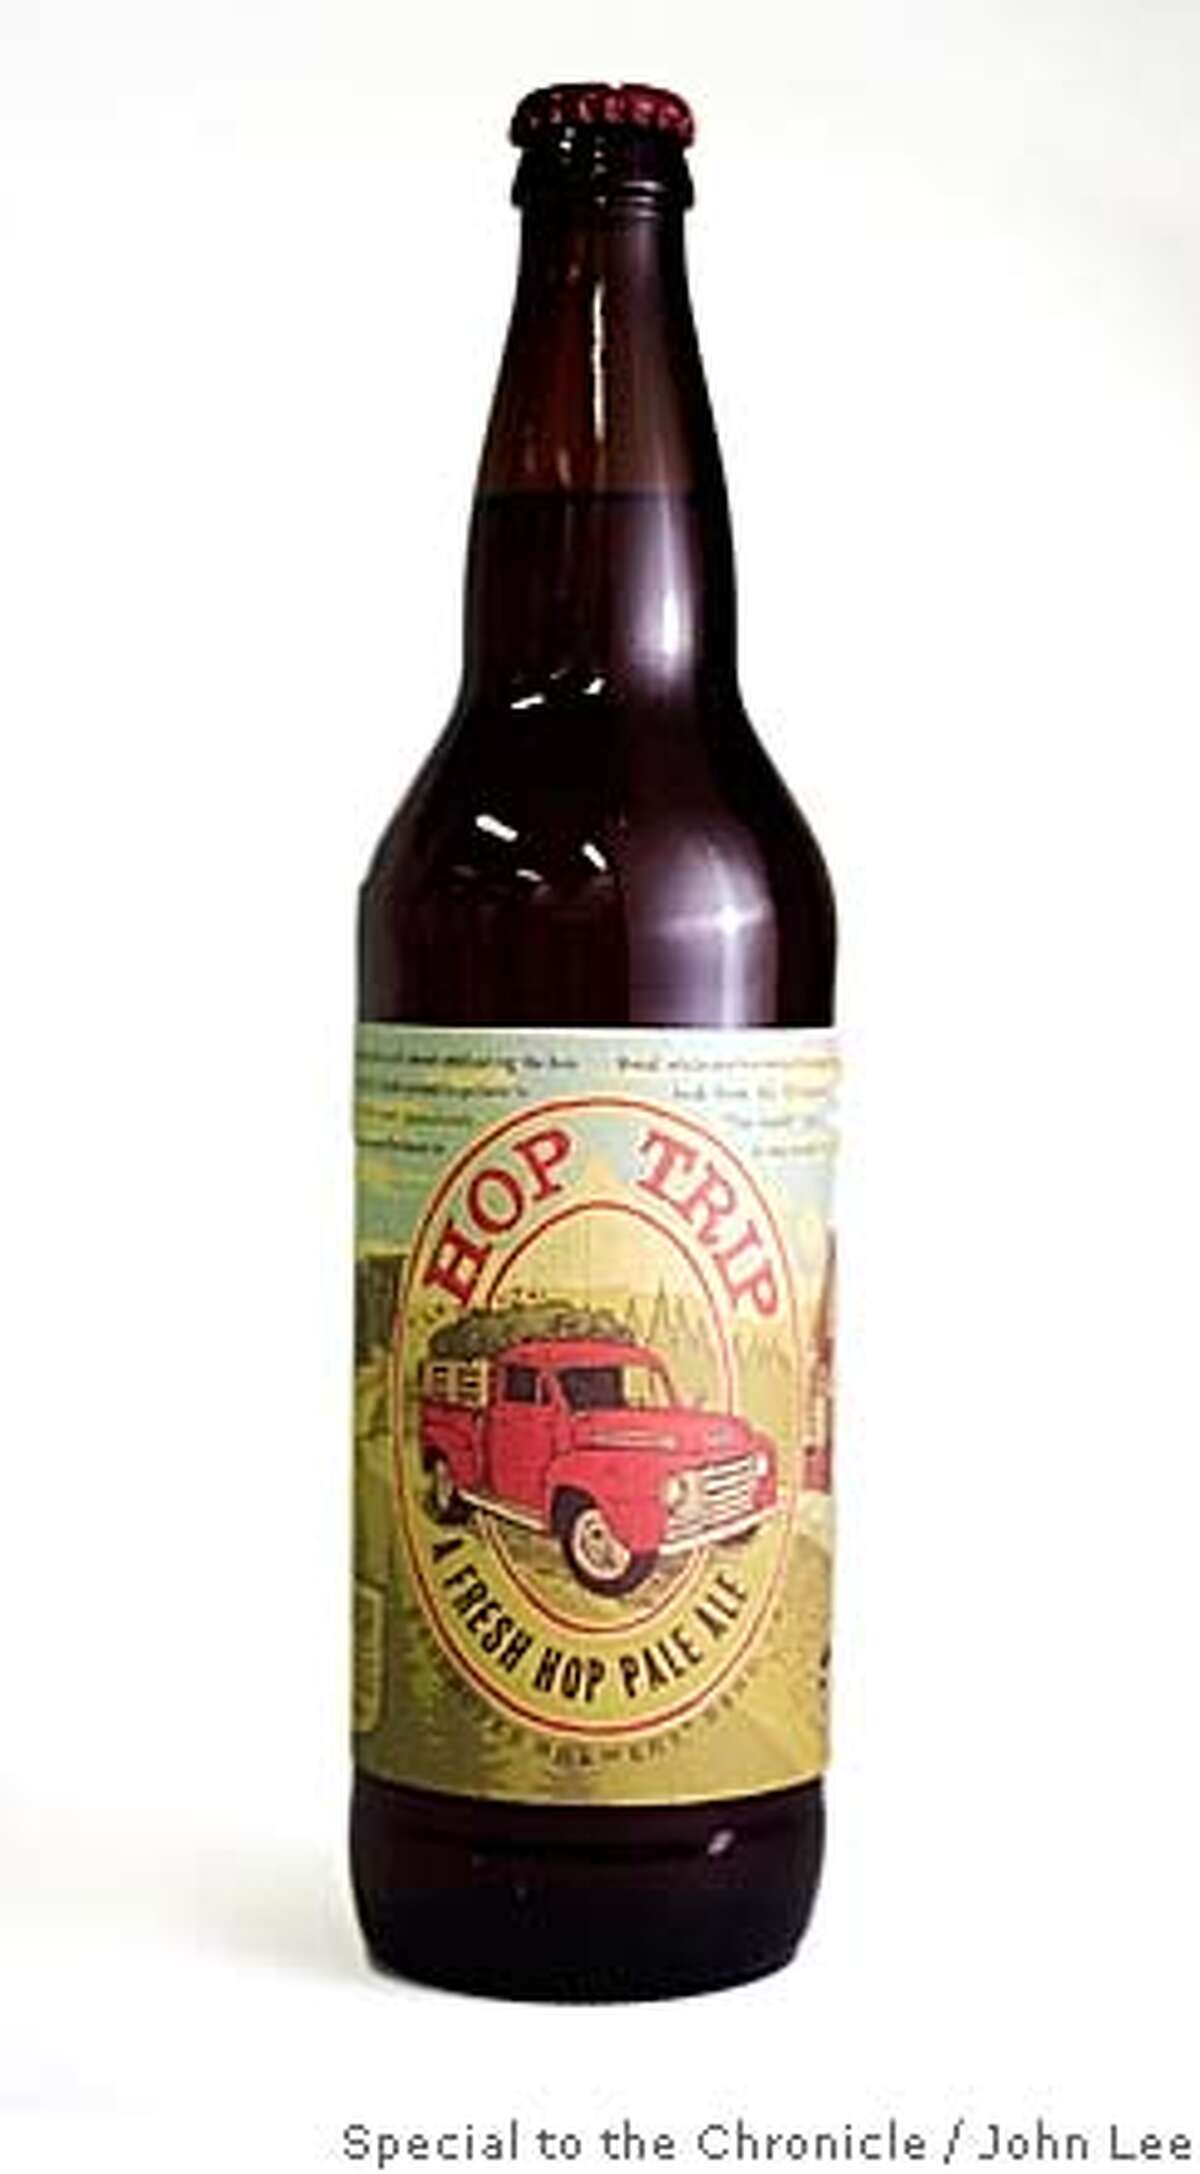 BEER26_JOHNLEE.JPG Hop Trip hop pale ale beer. By JOHN LEE/SPECIAL TO THE CHRONICLE